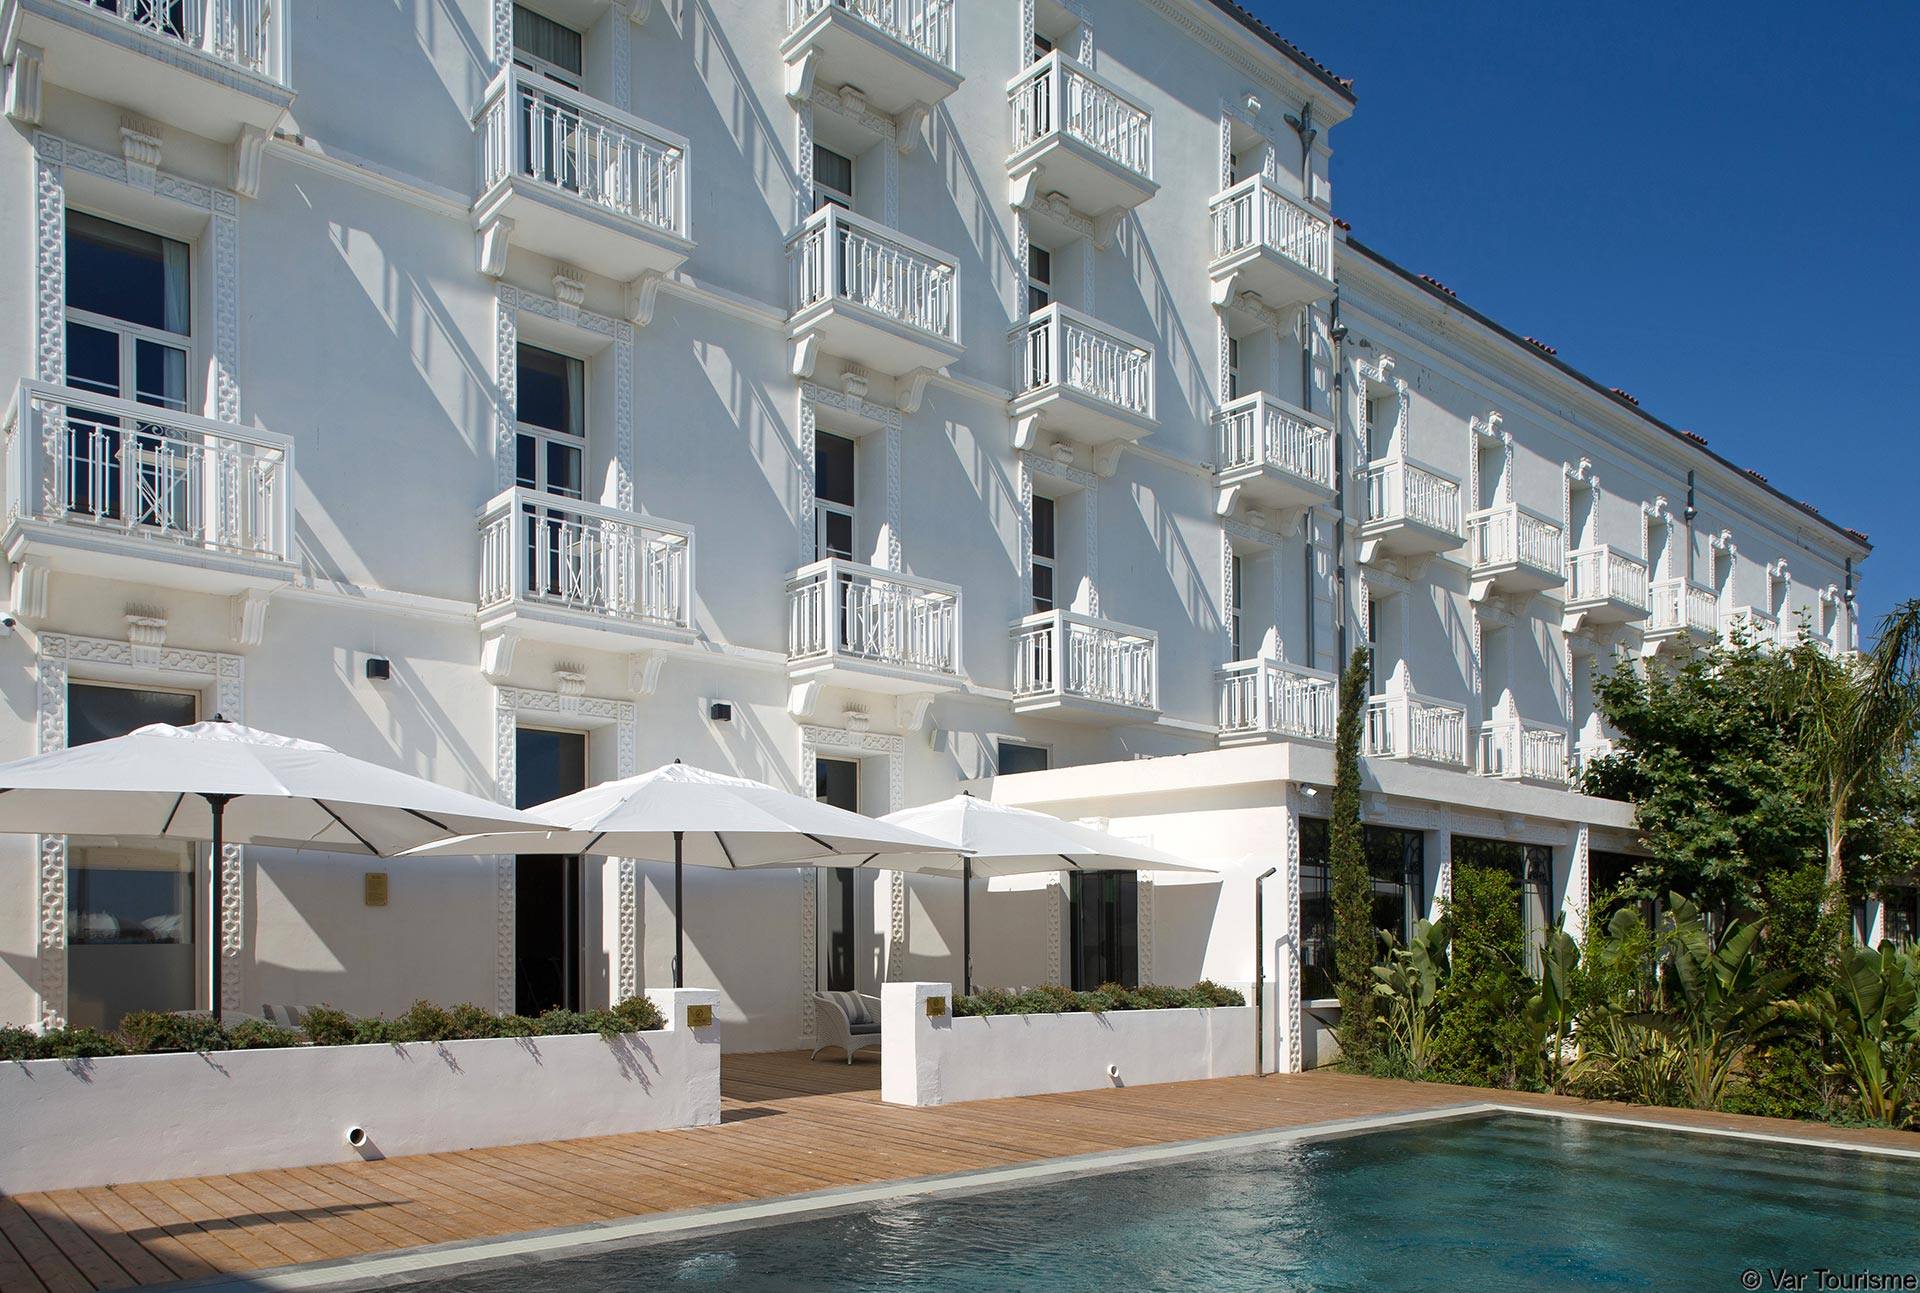 Hotel avec piscine à la Seyne sur Mer